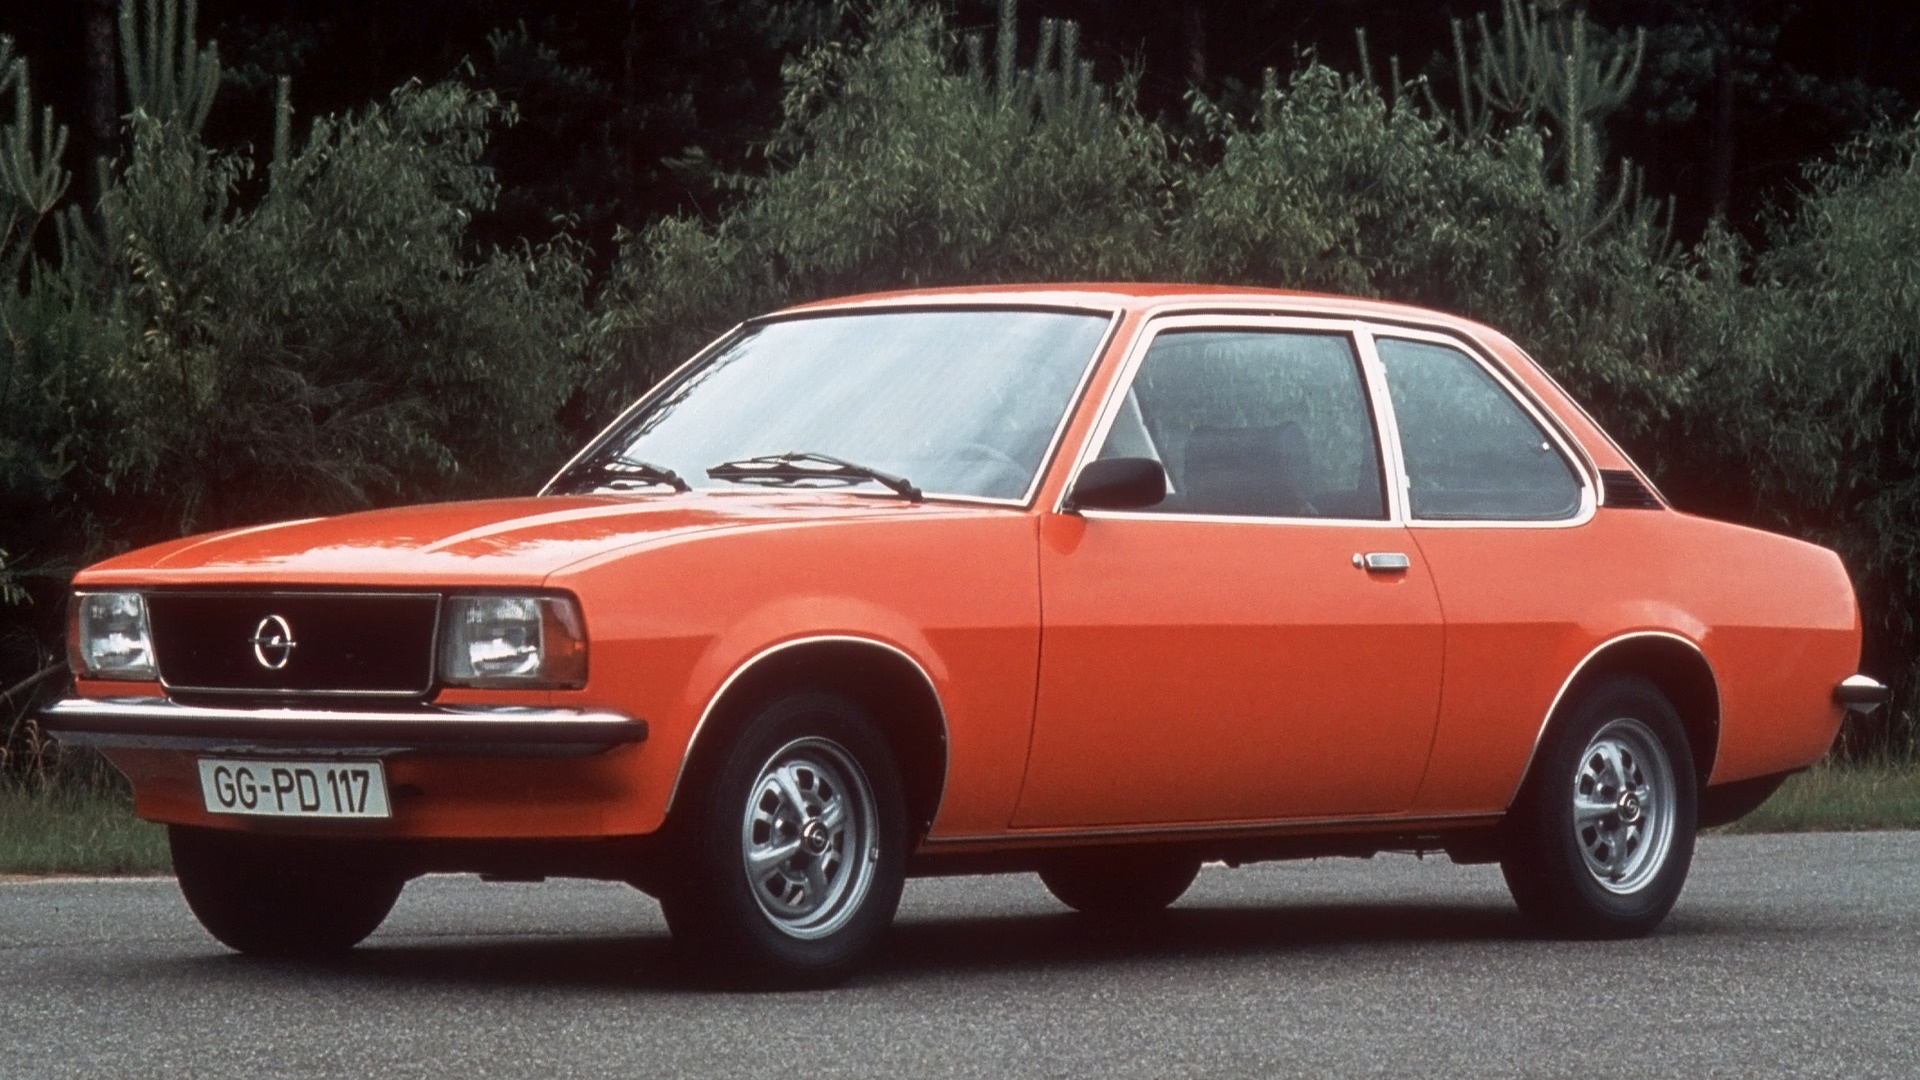 1975 Opel Ascona 2 door Wallpapers and HD Images Car Pixel